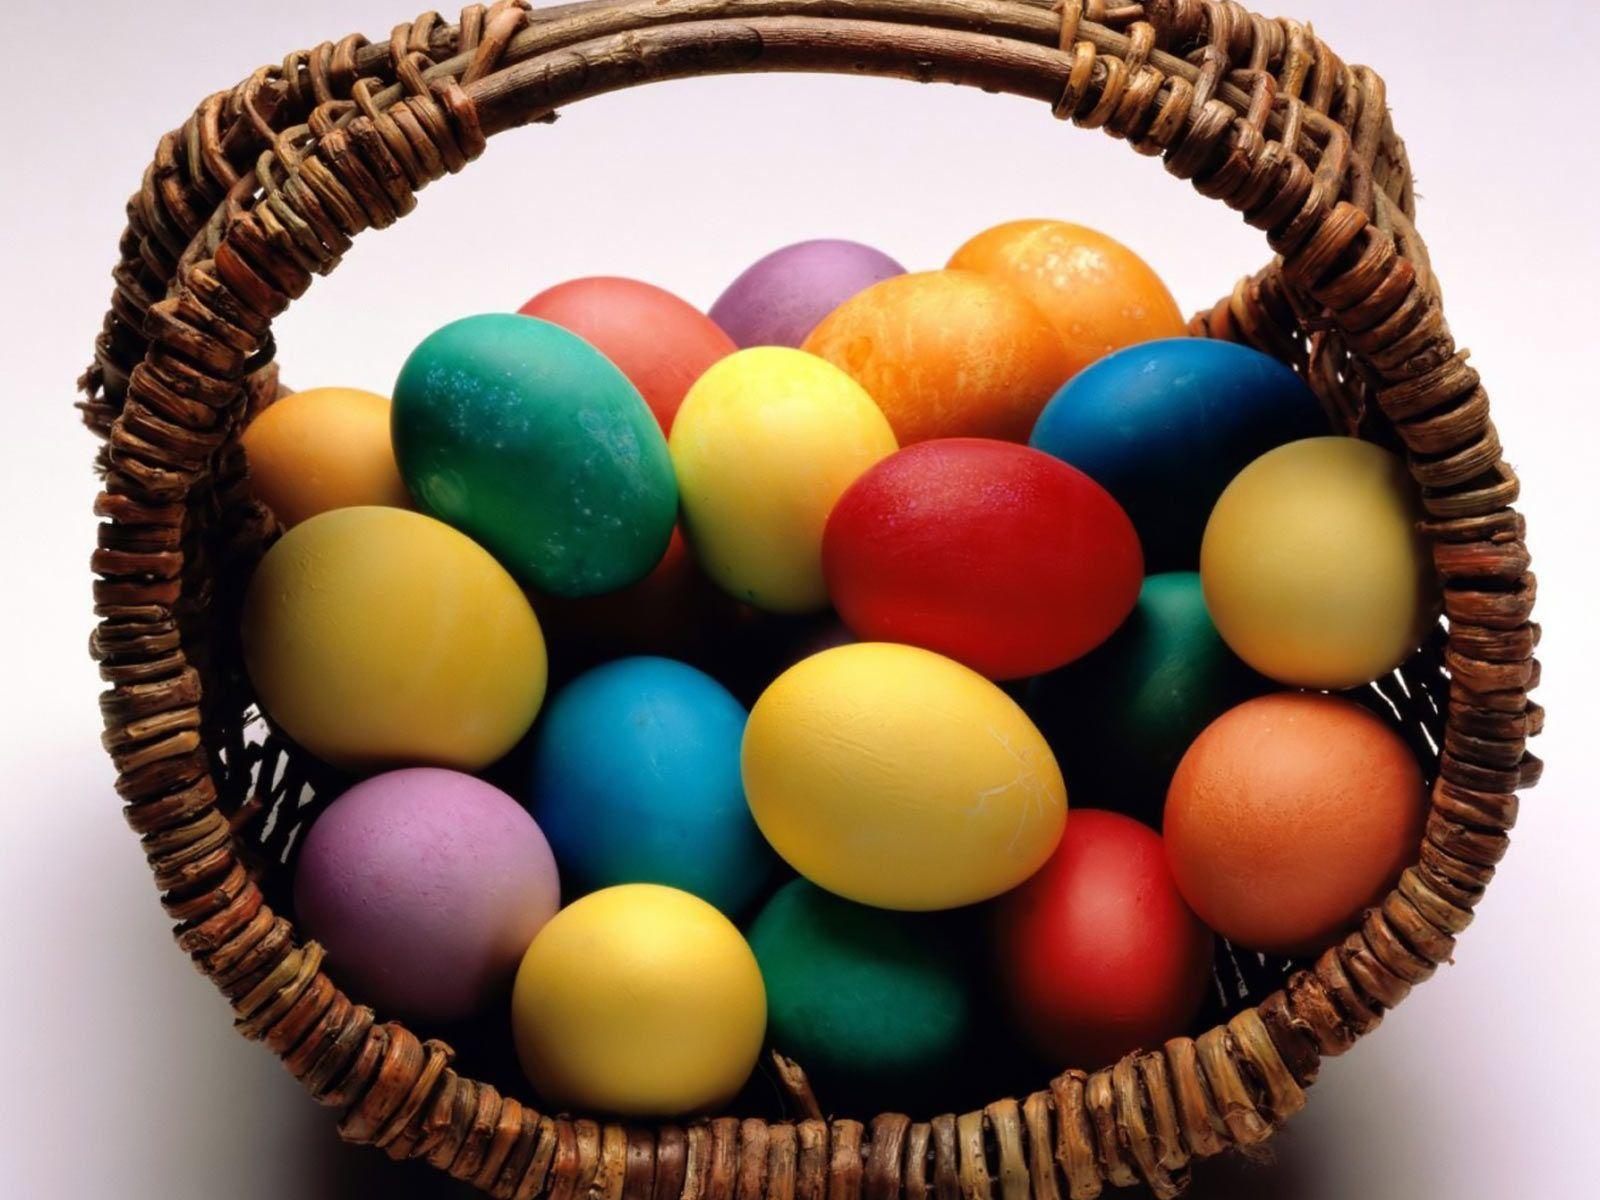 Desktop background // Background // Holiday // Easter egg basket